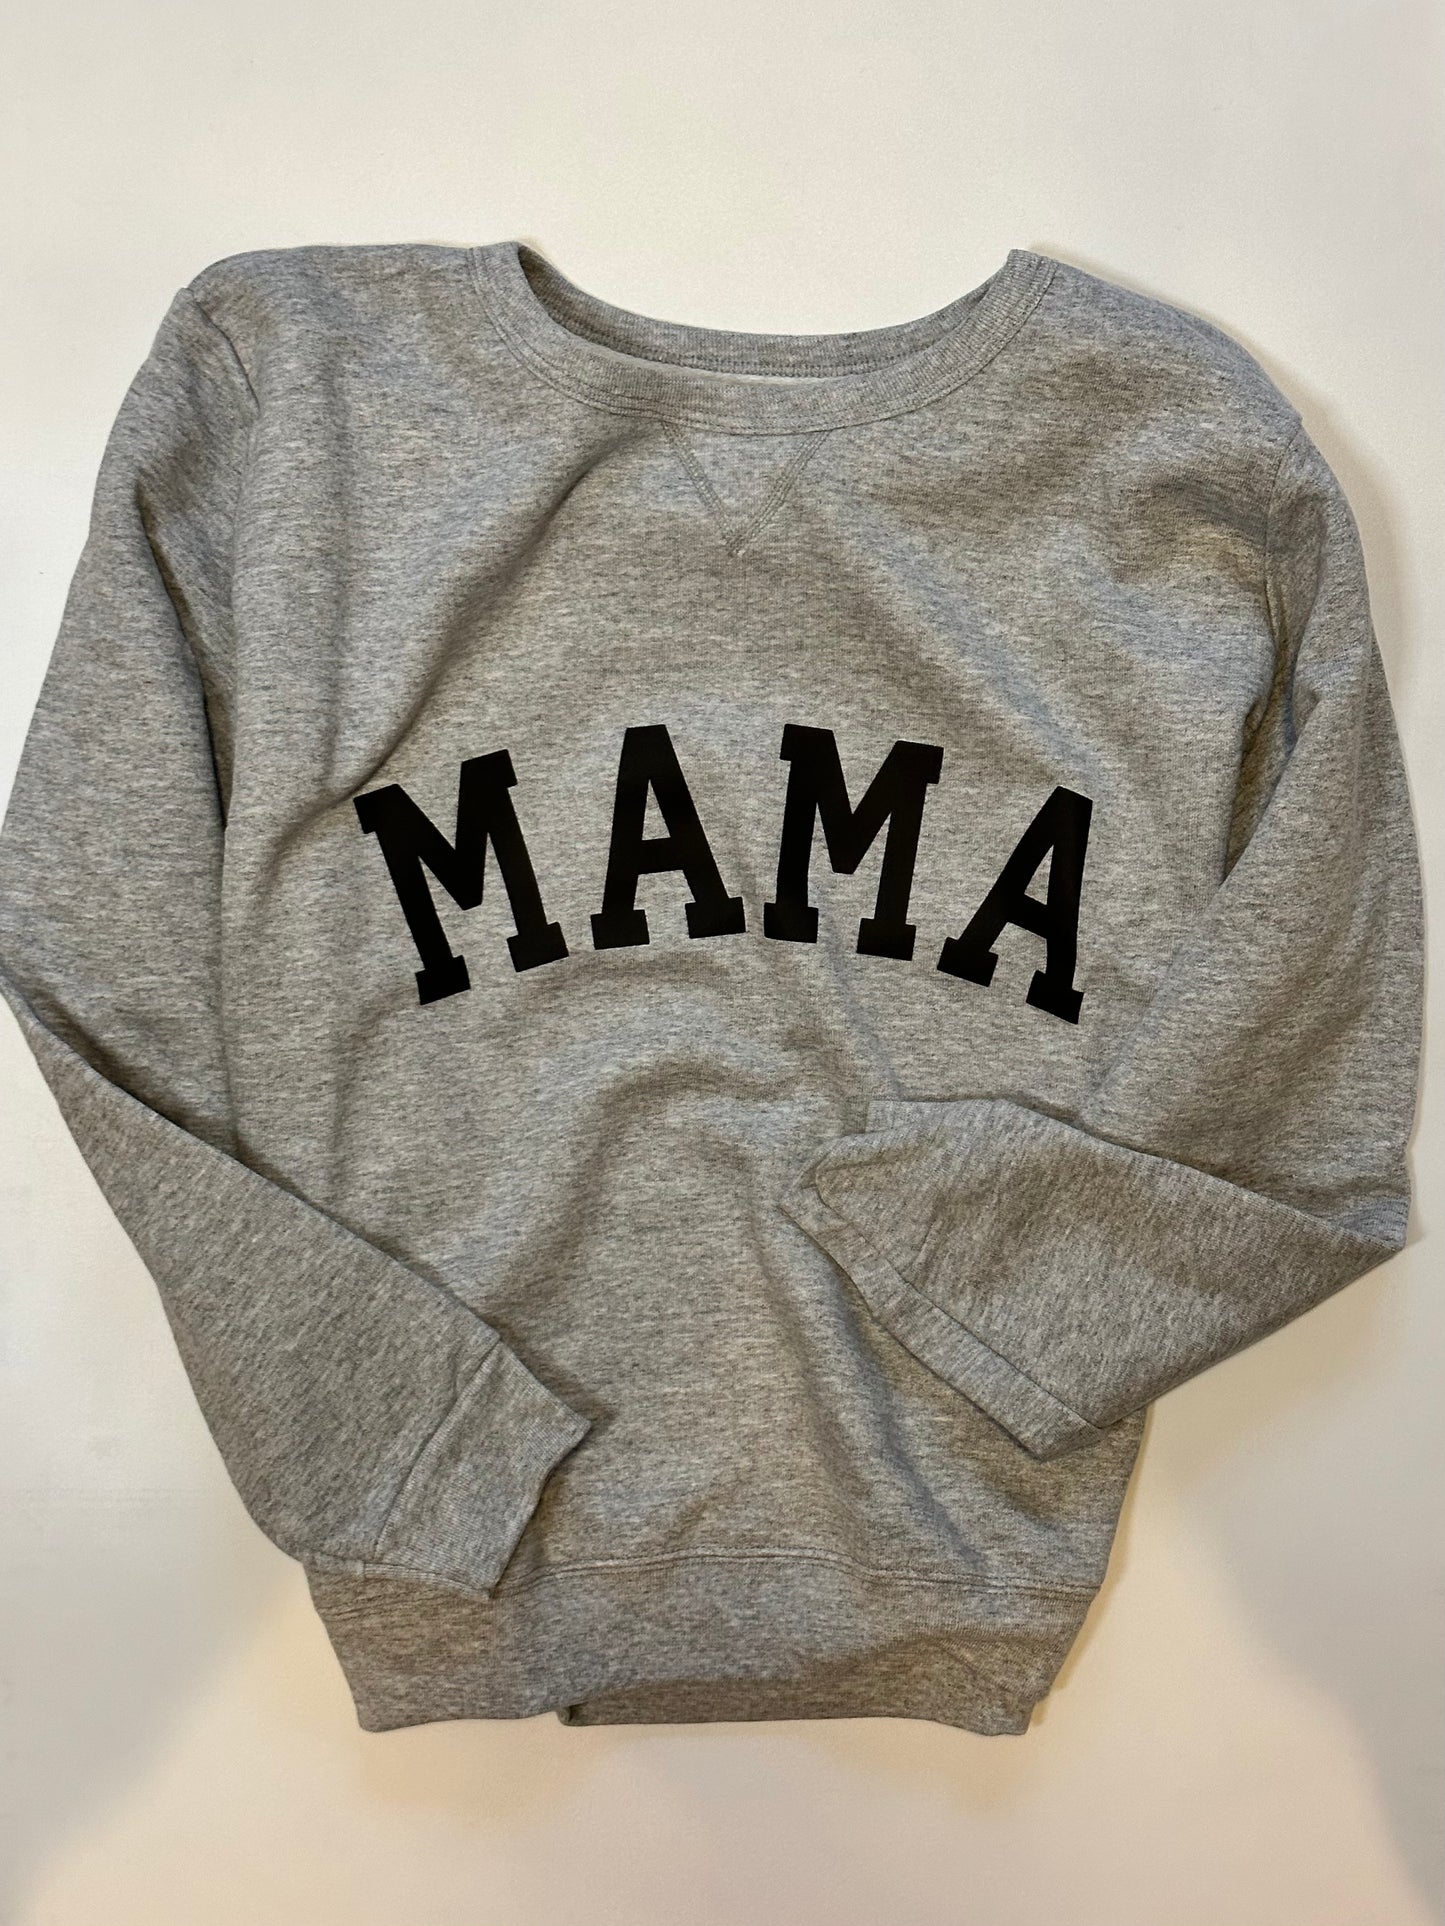 Personalized Mama Sweatshirt - Puff Application